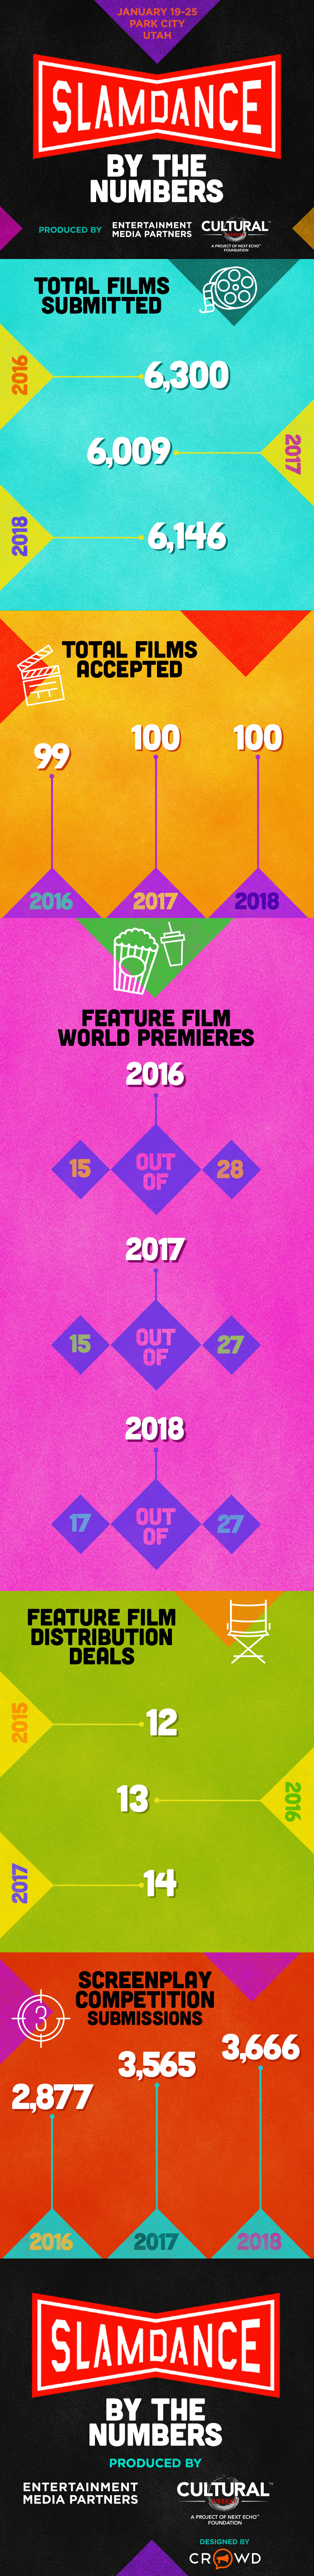 Slamdance 2018 Infographic